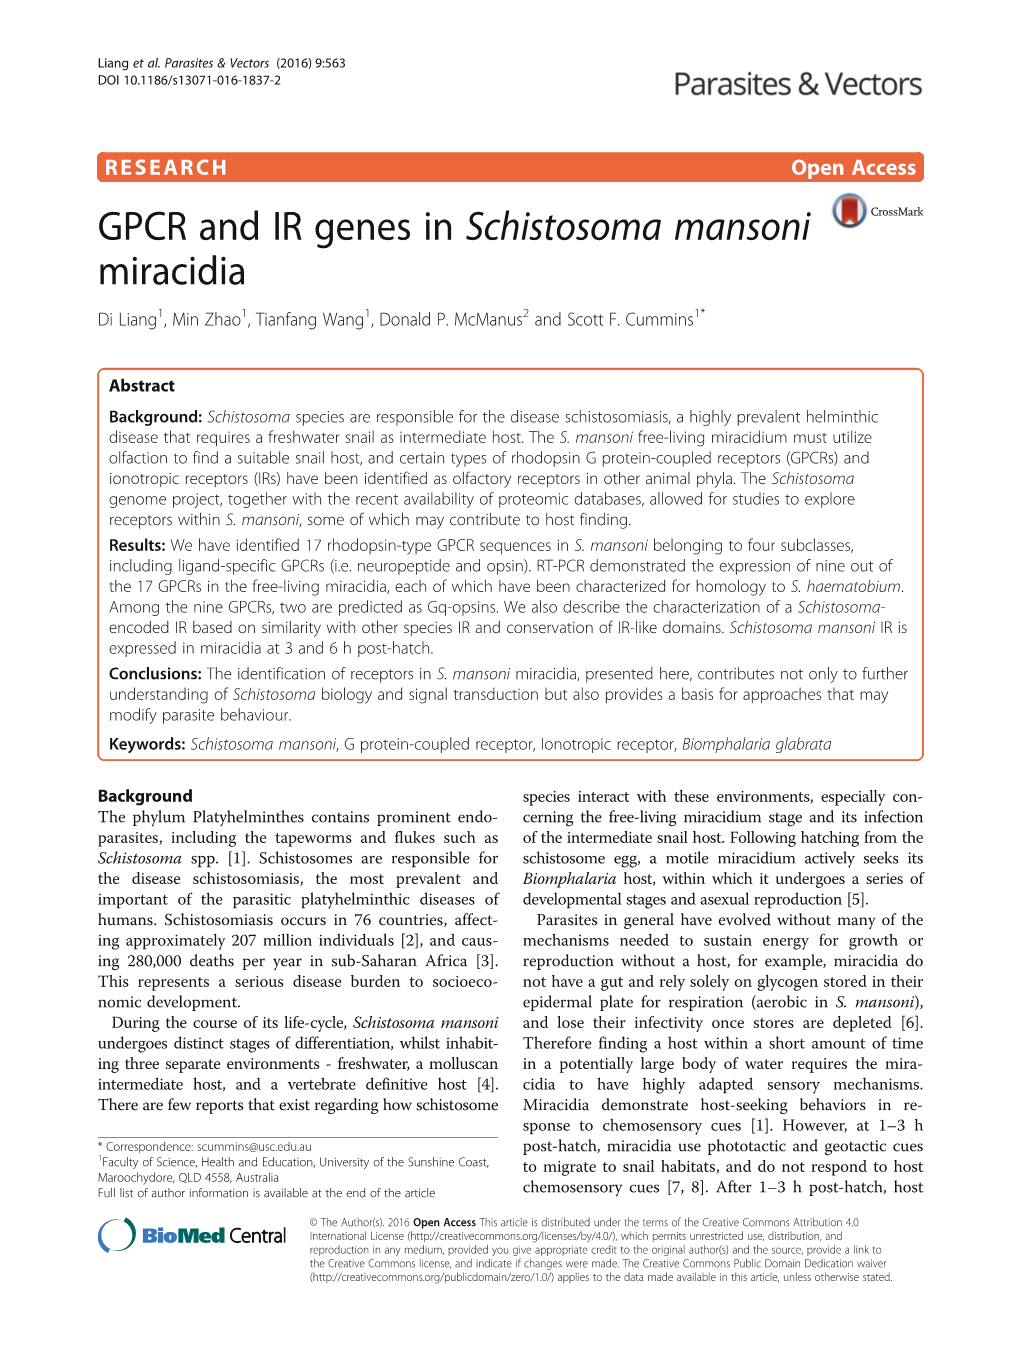 GPCR and IR Genes in Schistosoma Mansoni Miracidia Di Liang1, Min Zhao1, Tianfang Wang1, Donald P